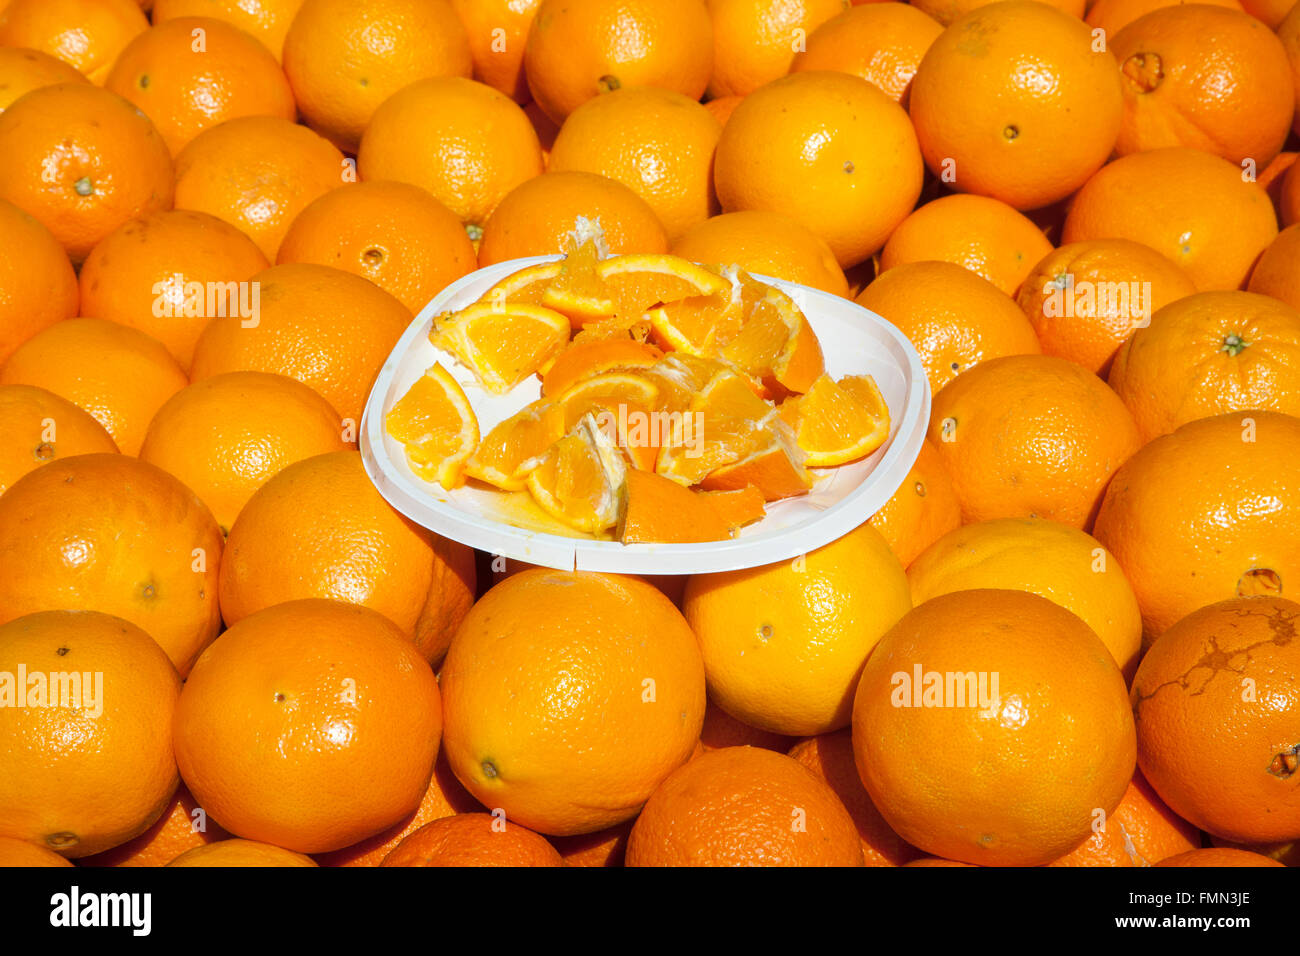 oranges exposées sur le marché pour la vente Banque D'Images